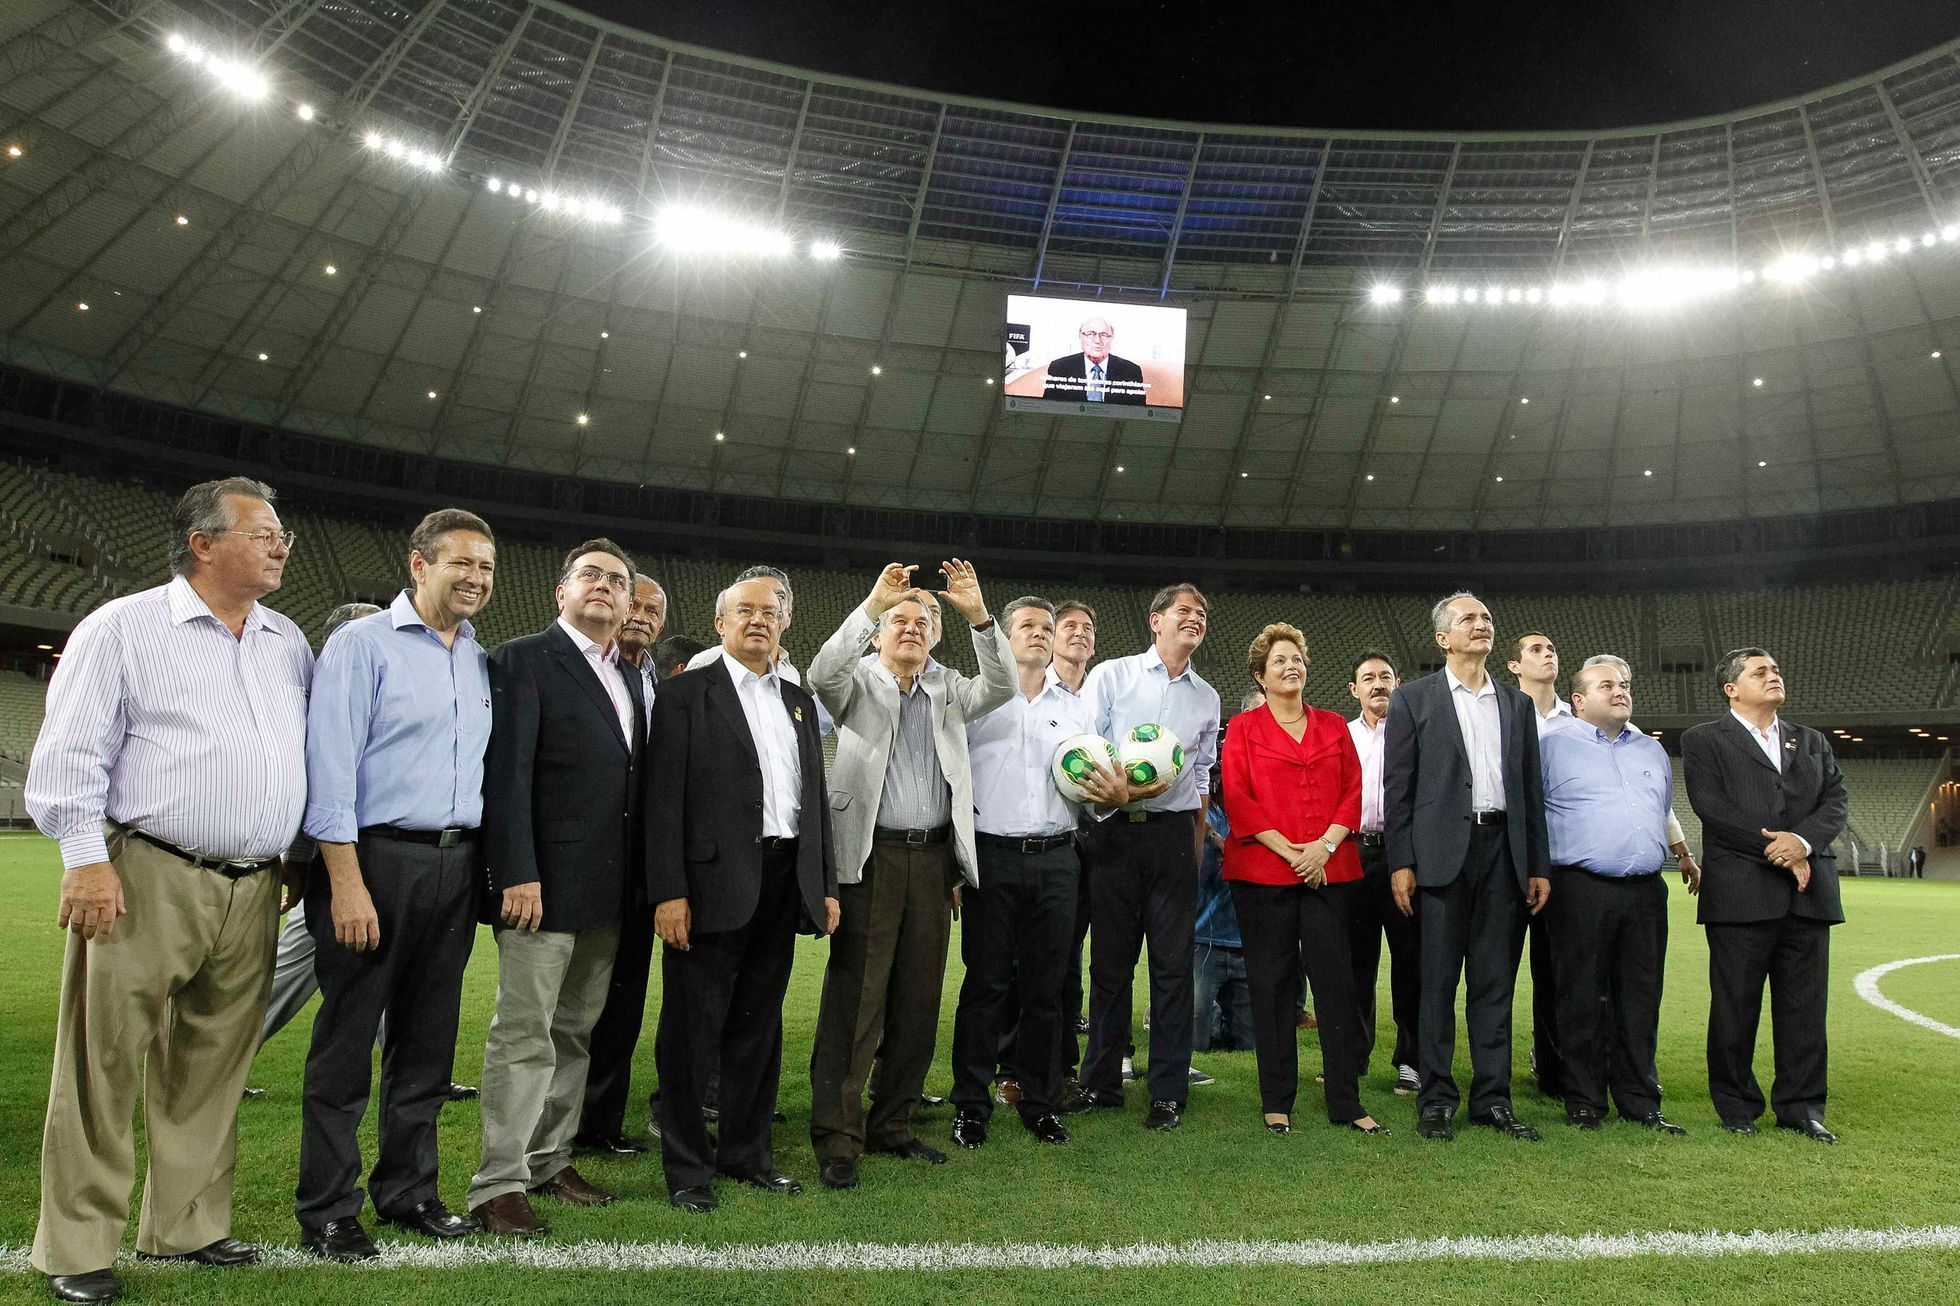 Slavnostní otevření stadionu Arena Castelao, kde se bude hrát MS v roce 2014